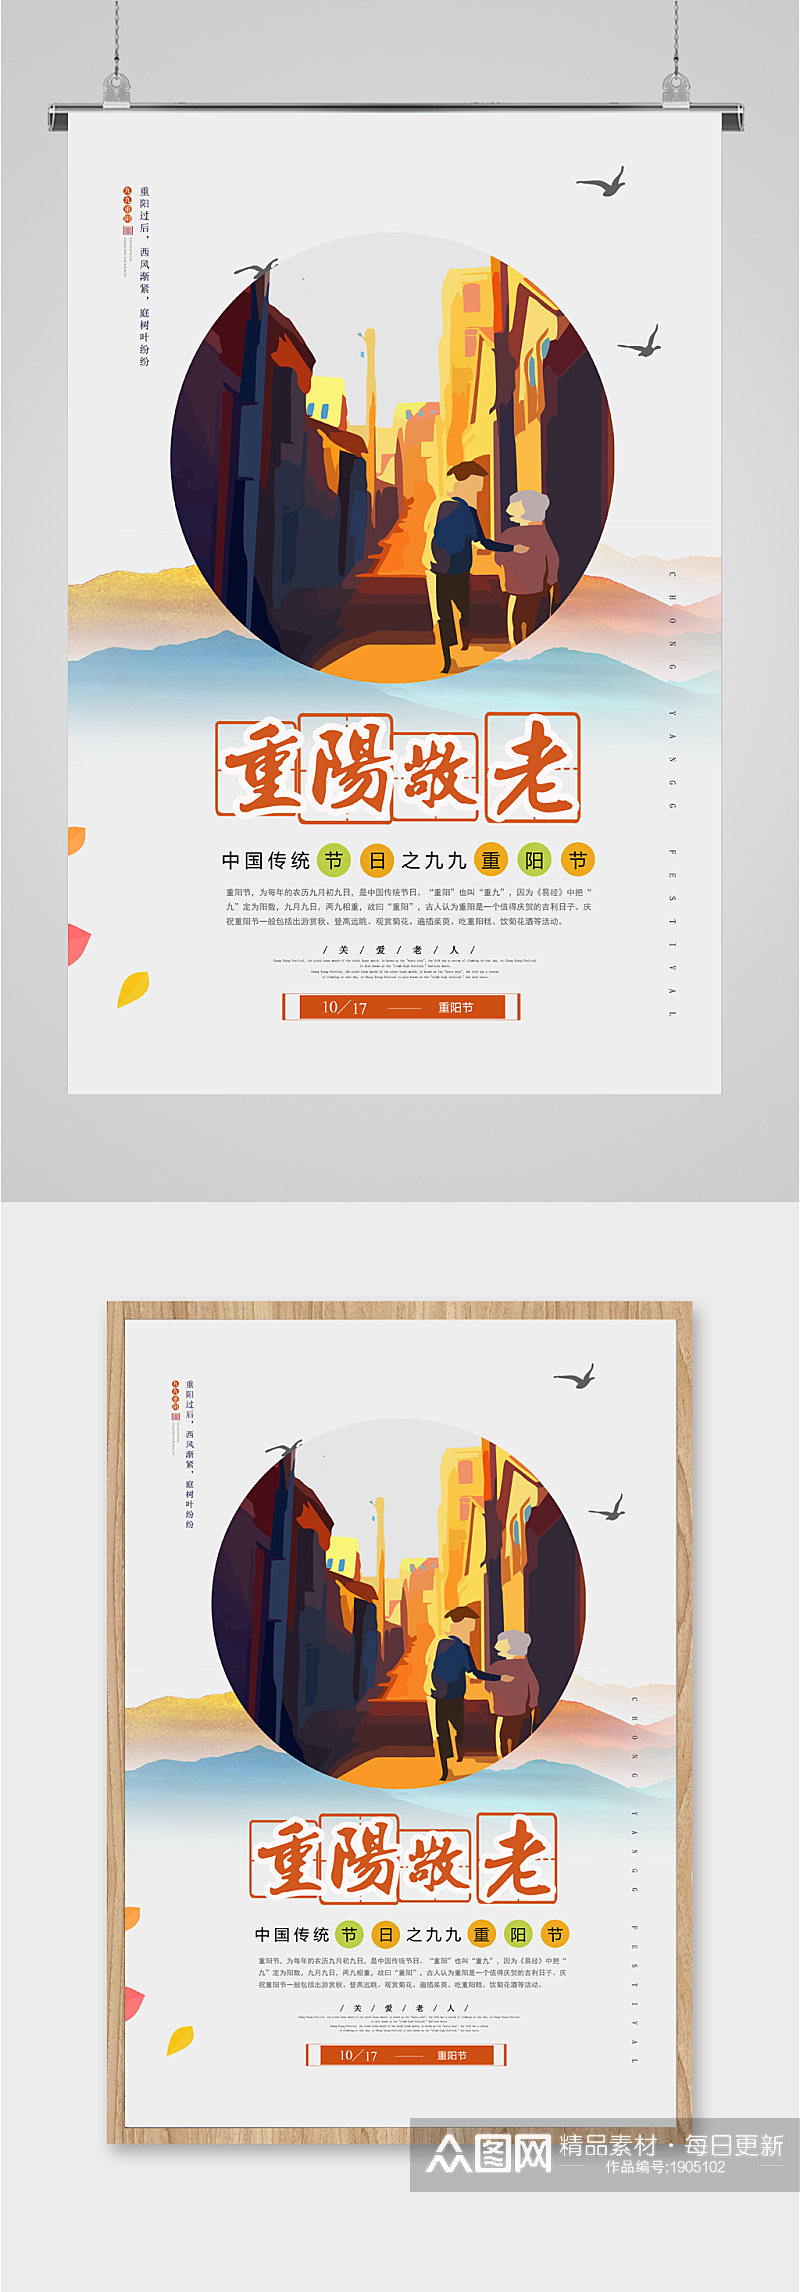 重阳节中国传统节日敬老海报素材